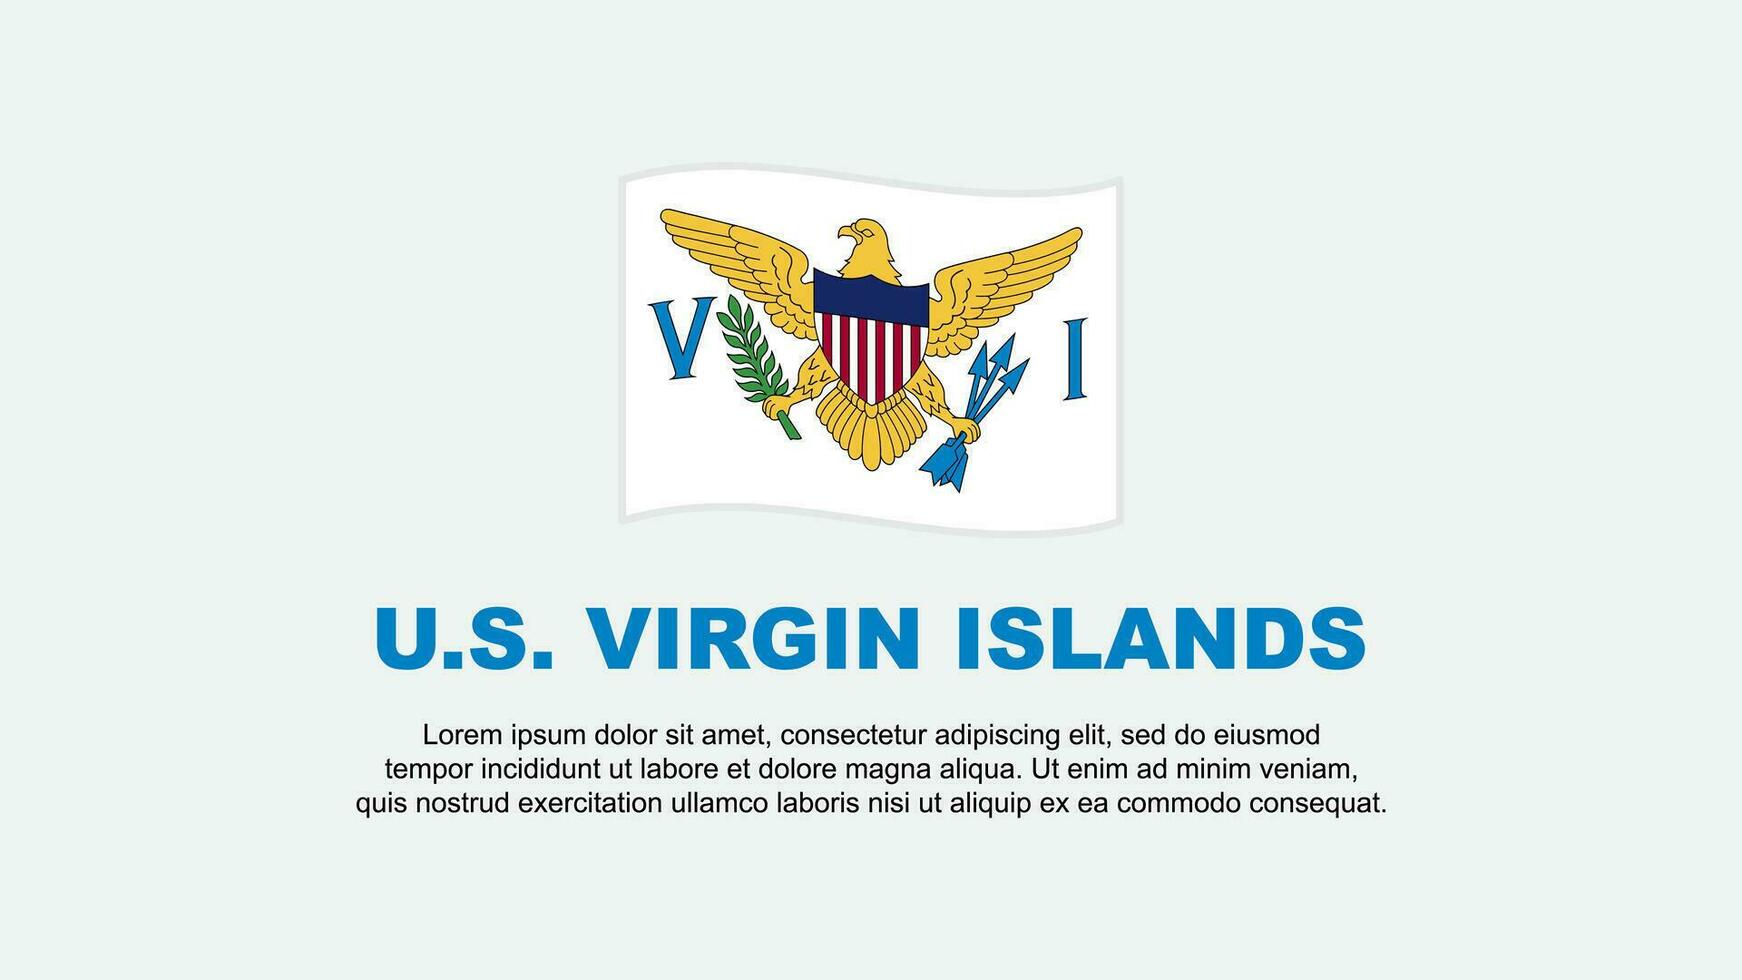 U.S. Virgin Islands Flag Abstract Background Design Template. U.S. Virgin Islands Independence Day Banner Social Media Vector Illustration. U.S. Virgin Islands Background